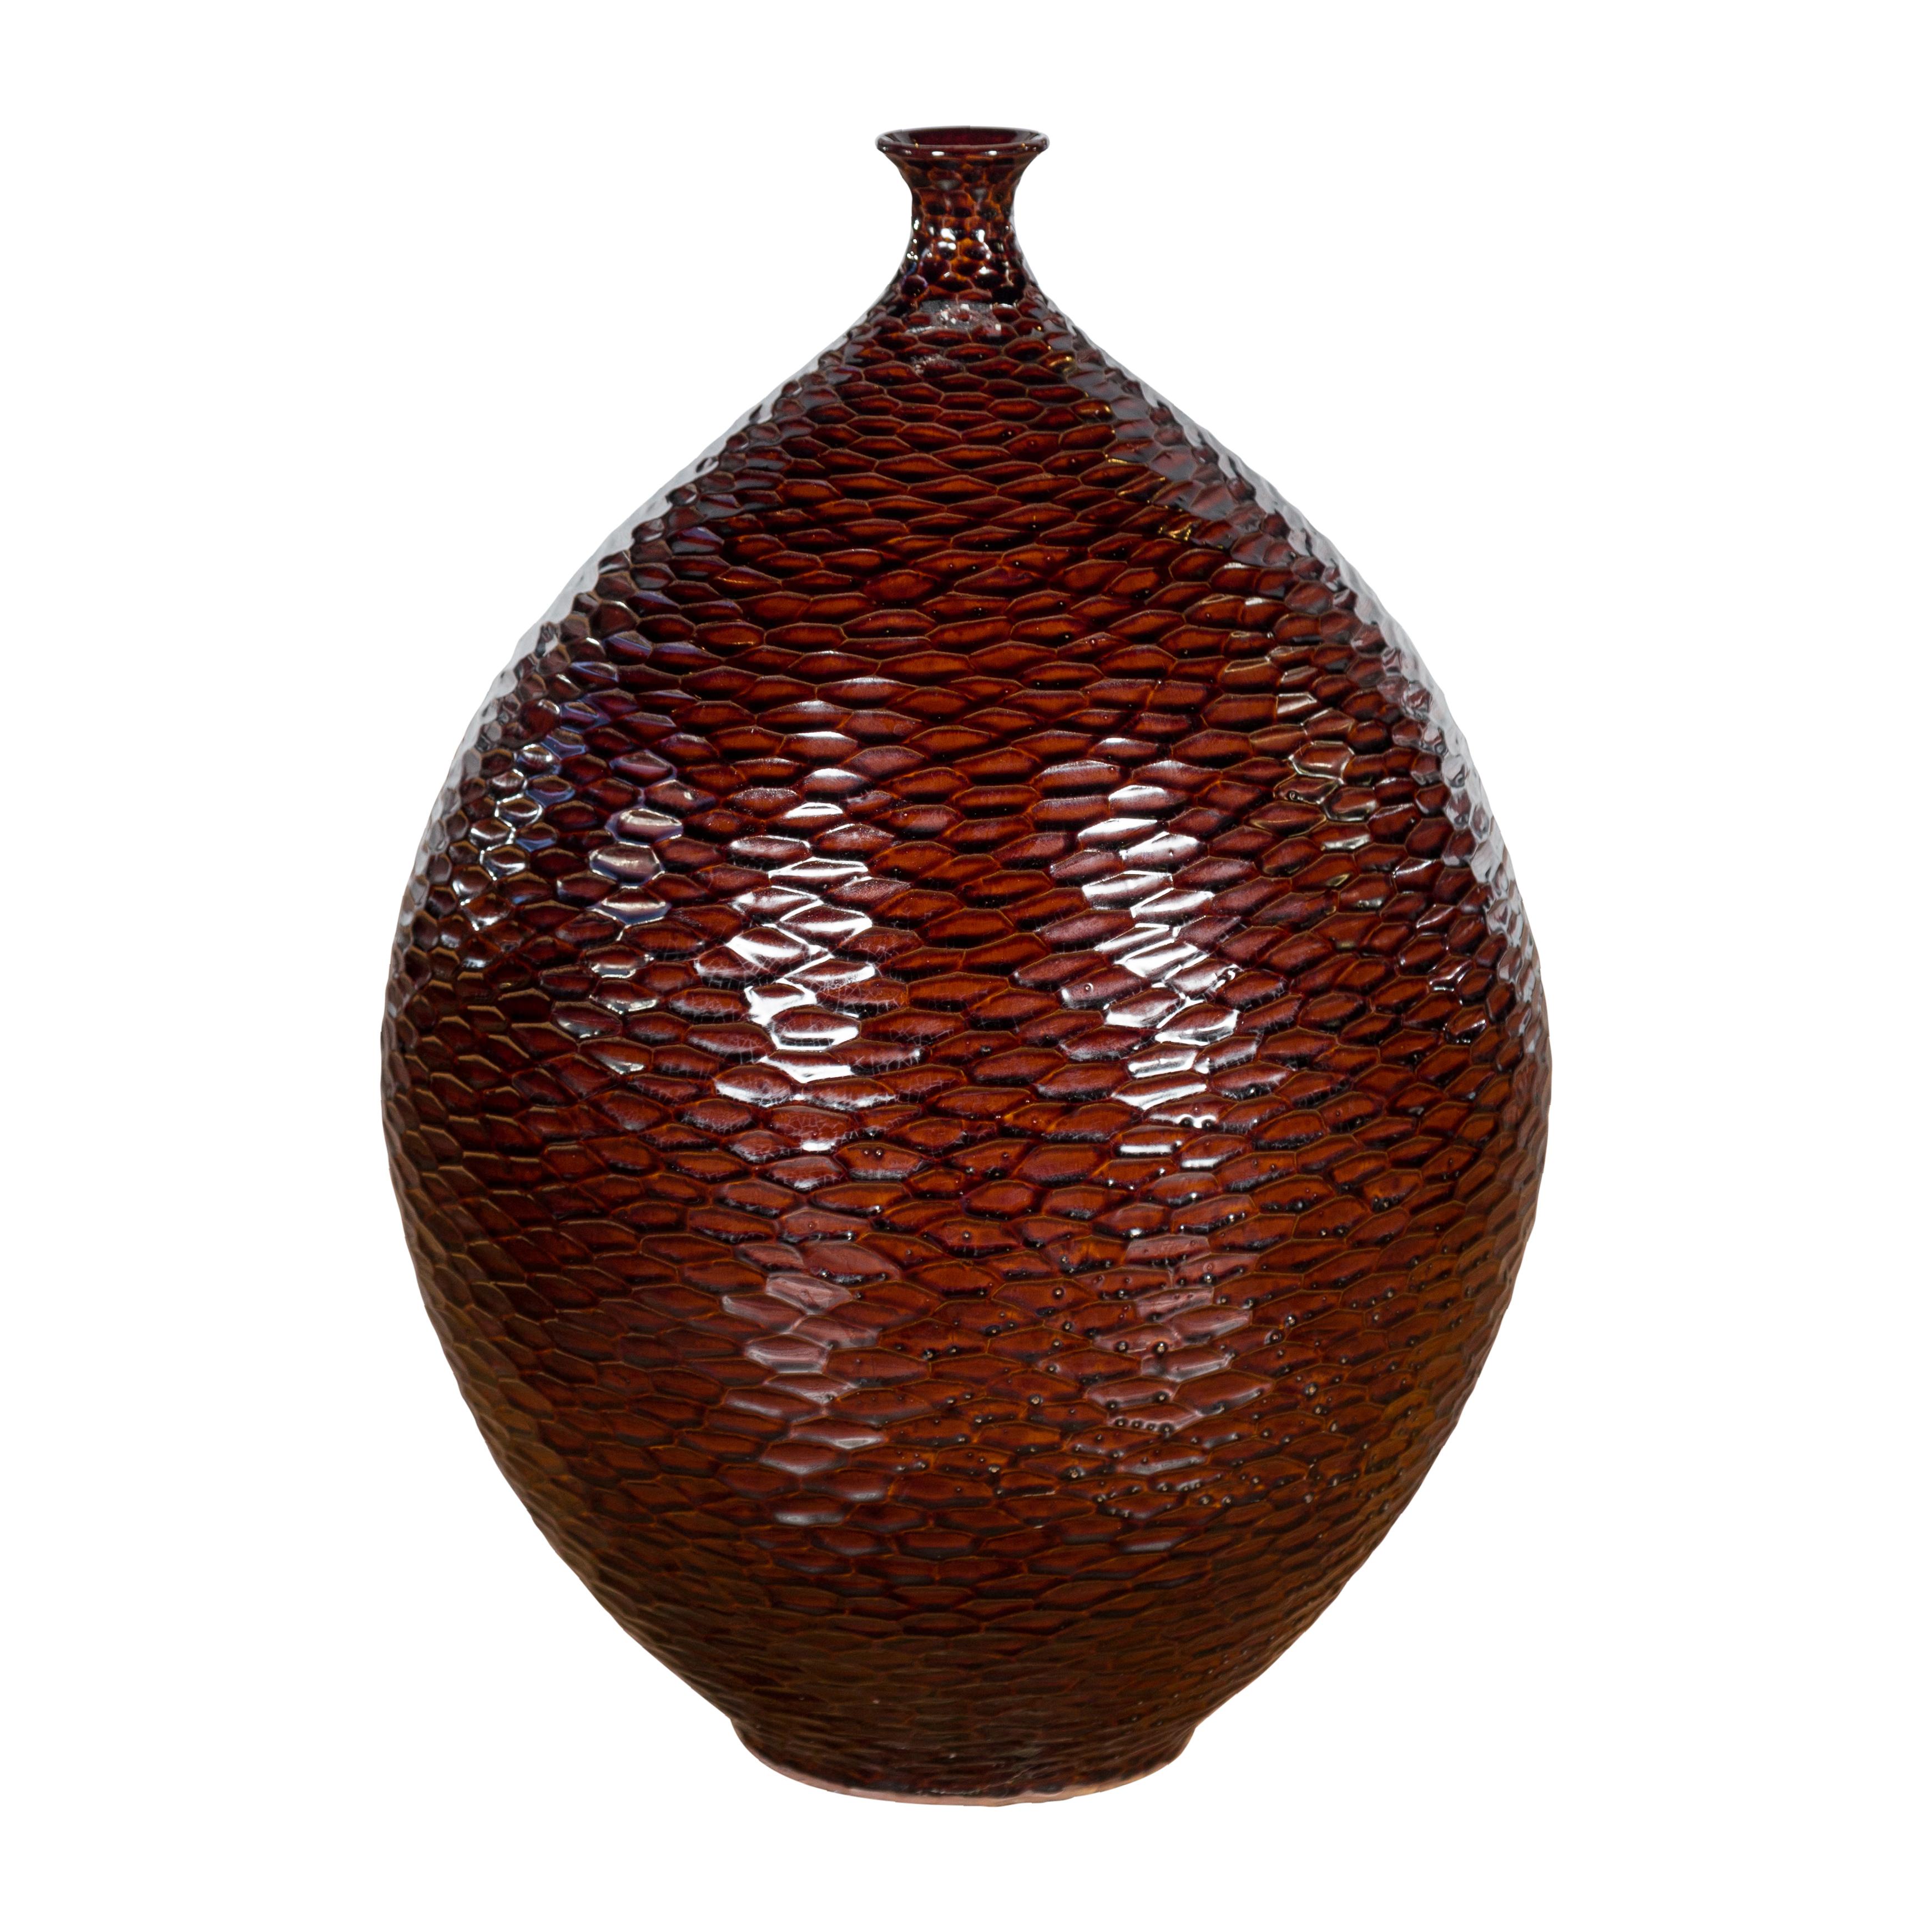 Eine handgefertigte Keramikvase der Collection'S mit burgundbrauner Struktur, tropfenförmig, mit wabenförmigen Motiven und schmaler Öffnung. Diese Keramikvase der Prem Collection bringt mit ihren klaren Linien und der farbenfrohen Oberfläche